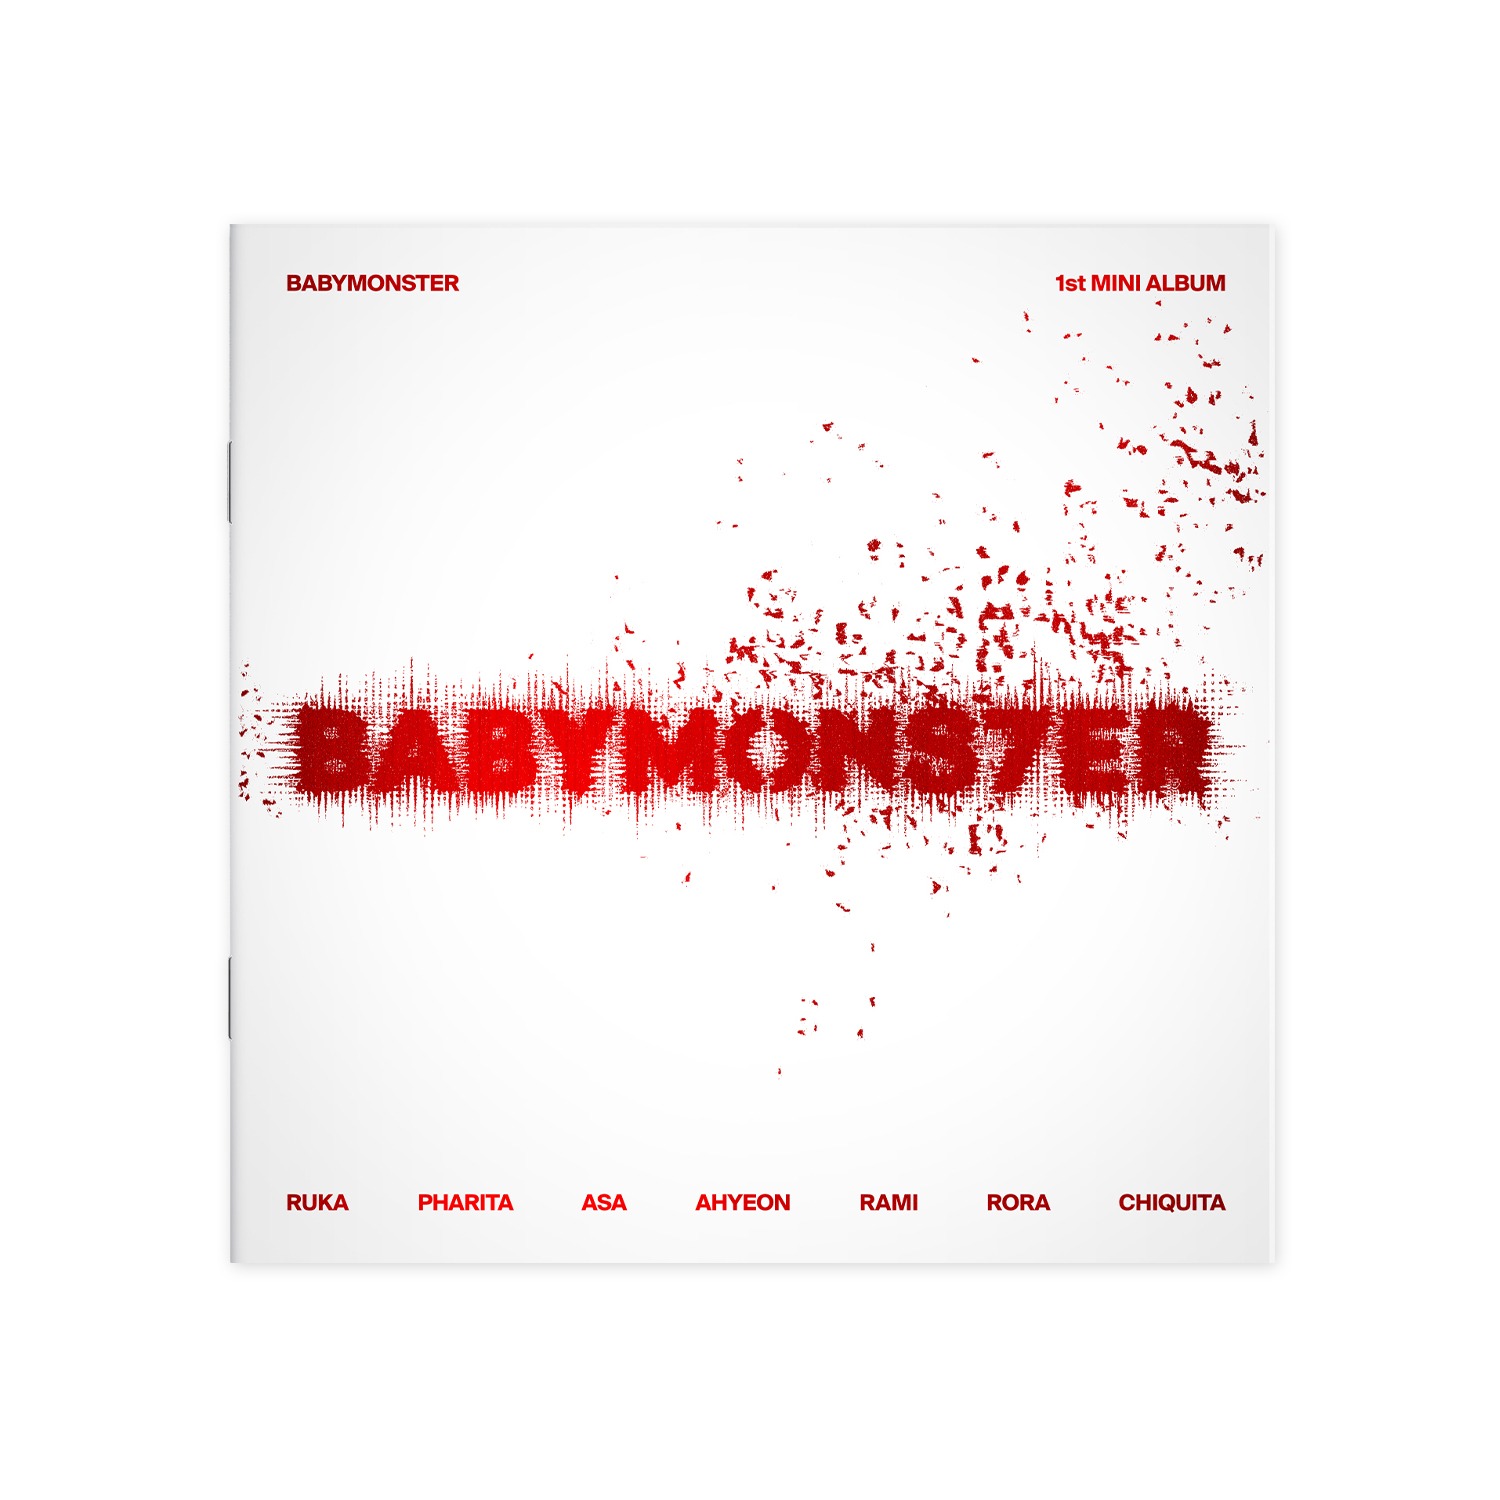 [B2B] BABYMONSTER 1st MINI ALBUM [BABYMONS7ER] PHOTOBOOK VER. YG SELECT